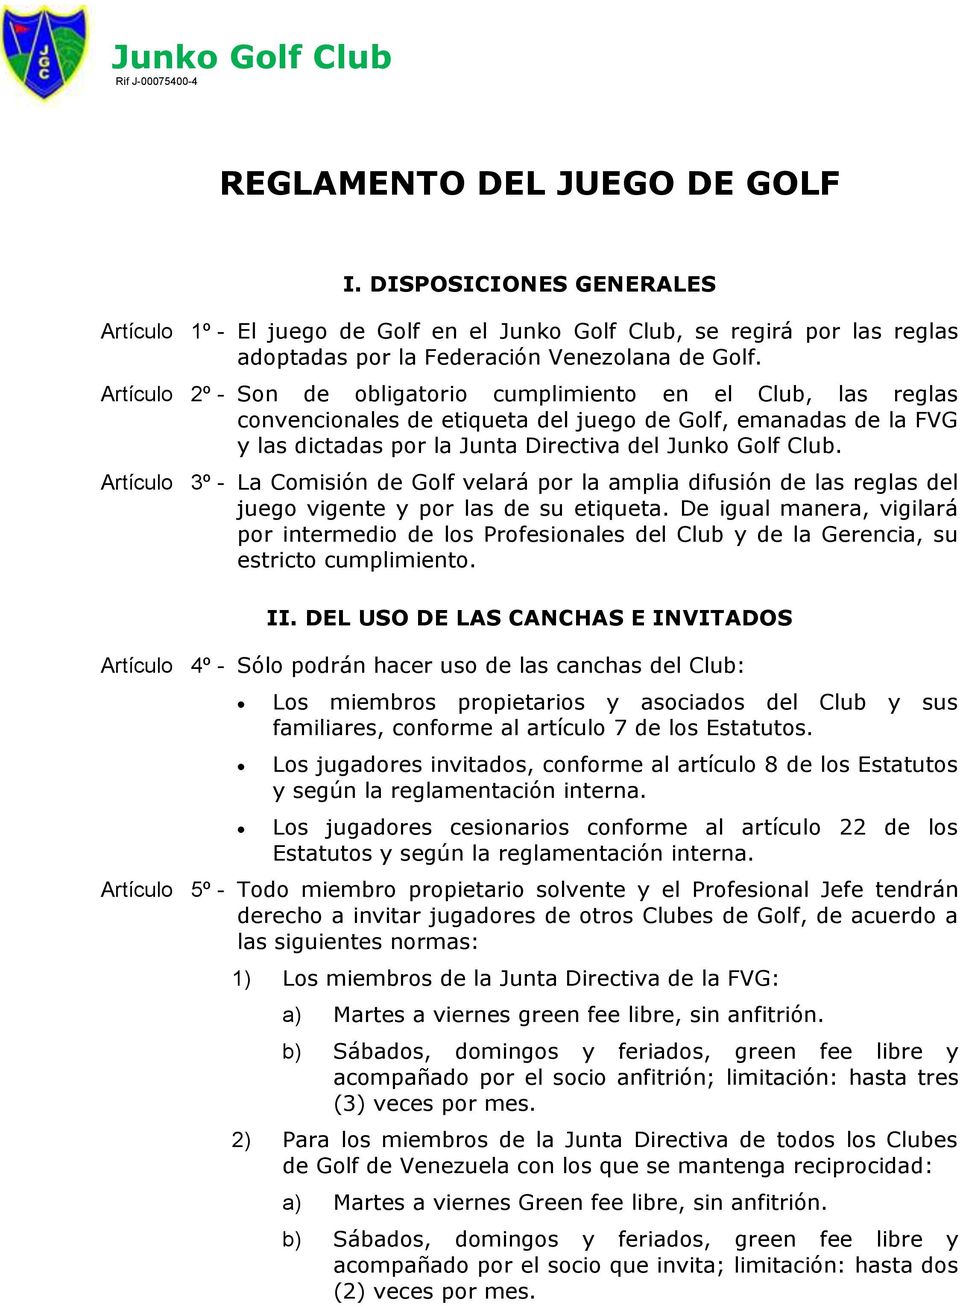 Artículo 3º - La Comisión de Golf velará por la amplia difusión de las reglas del juego vigente y por las de su etiqueta.